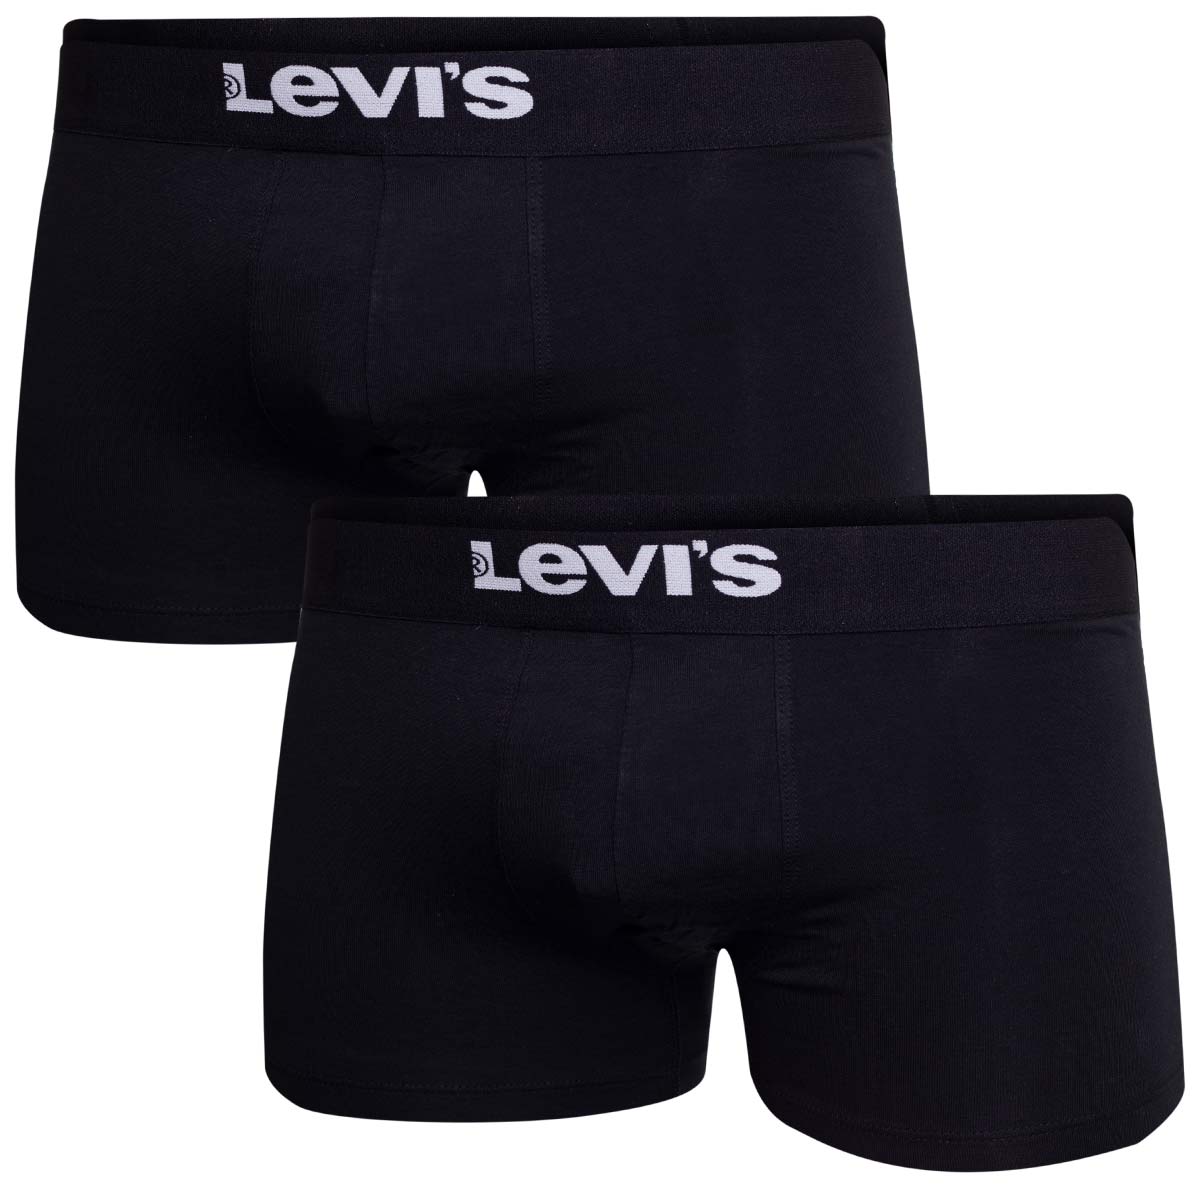 Levi'S Man's Underpants 701222844001